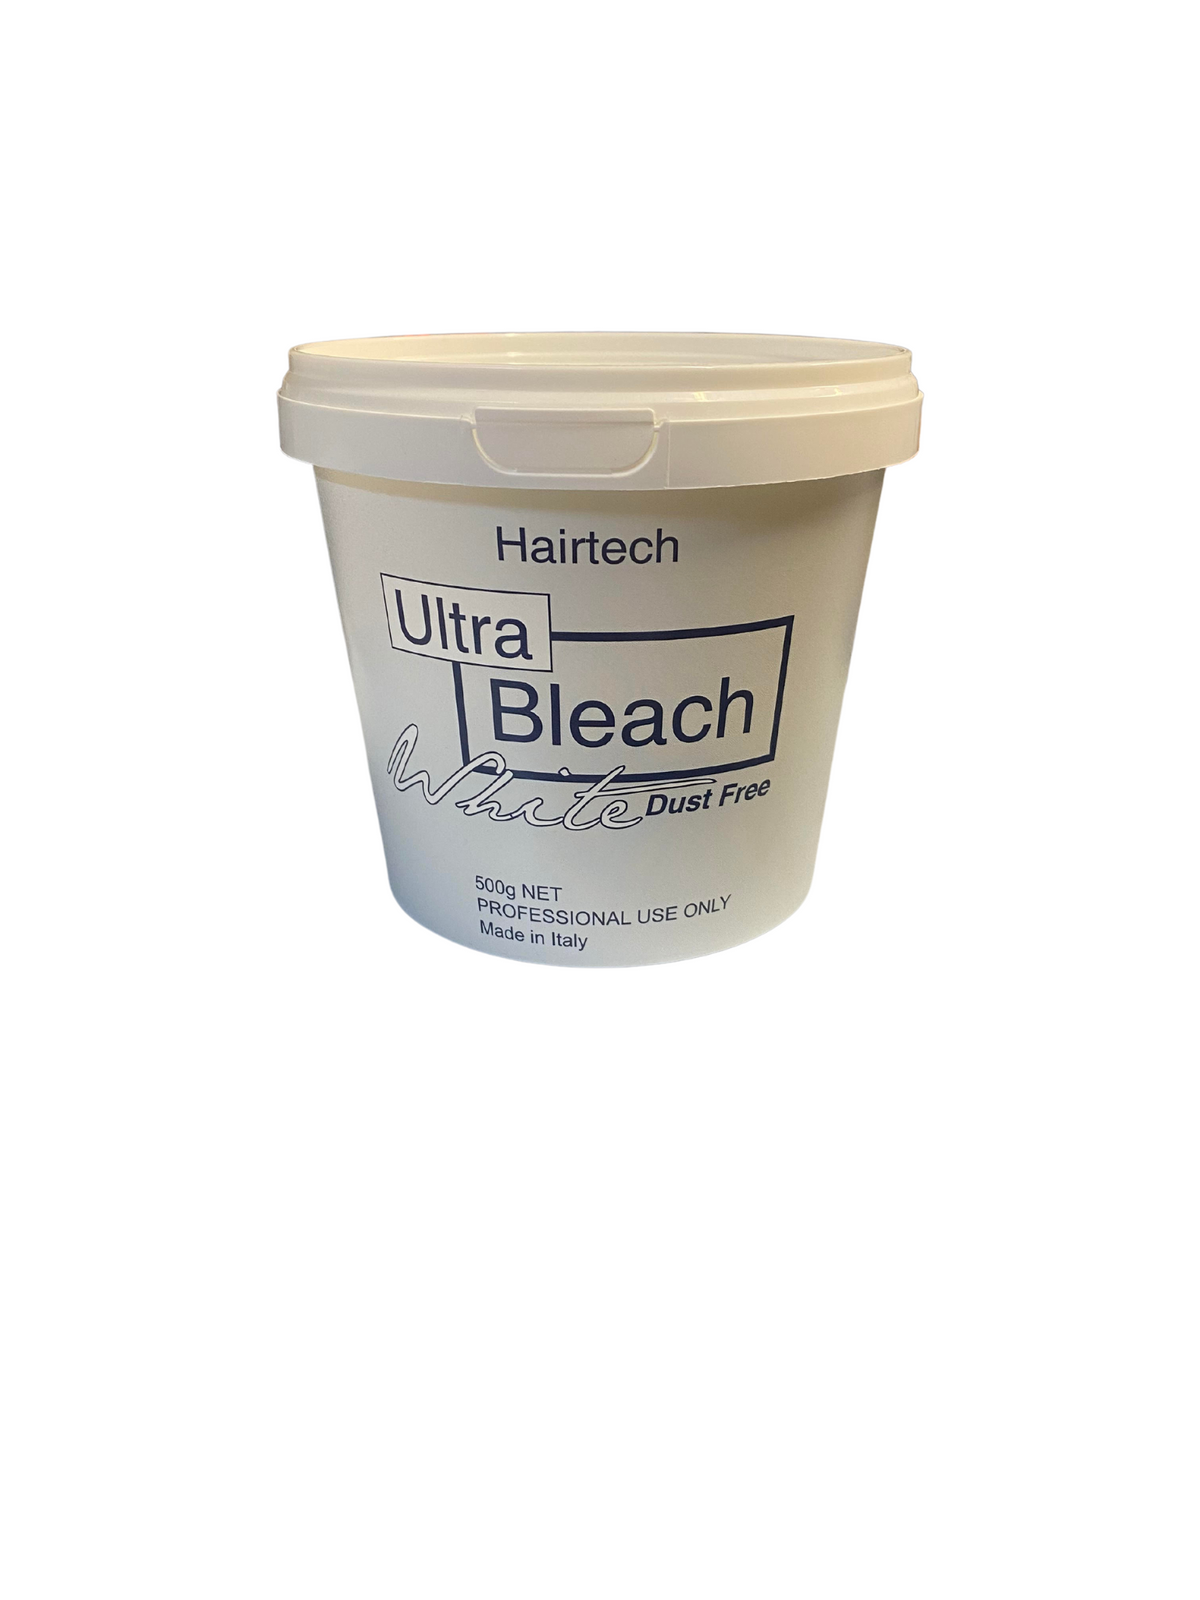 Hairtech Ultra Bleach White Dust Free 500g